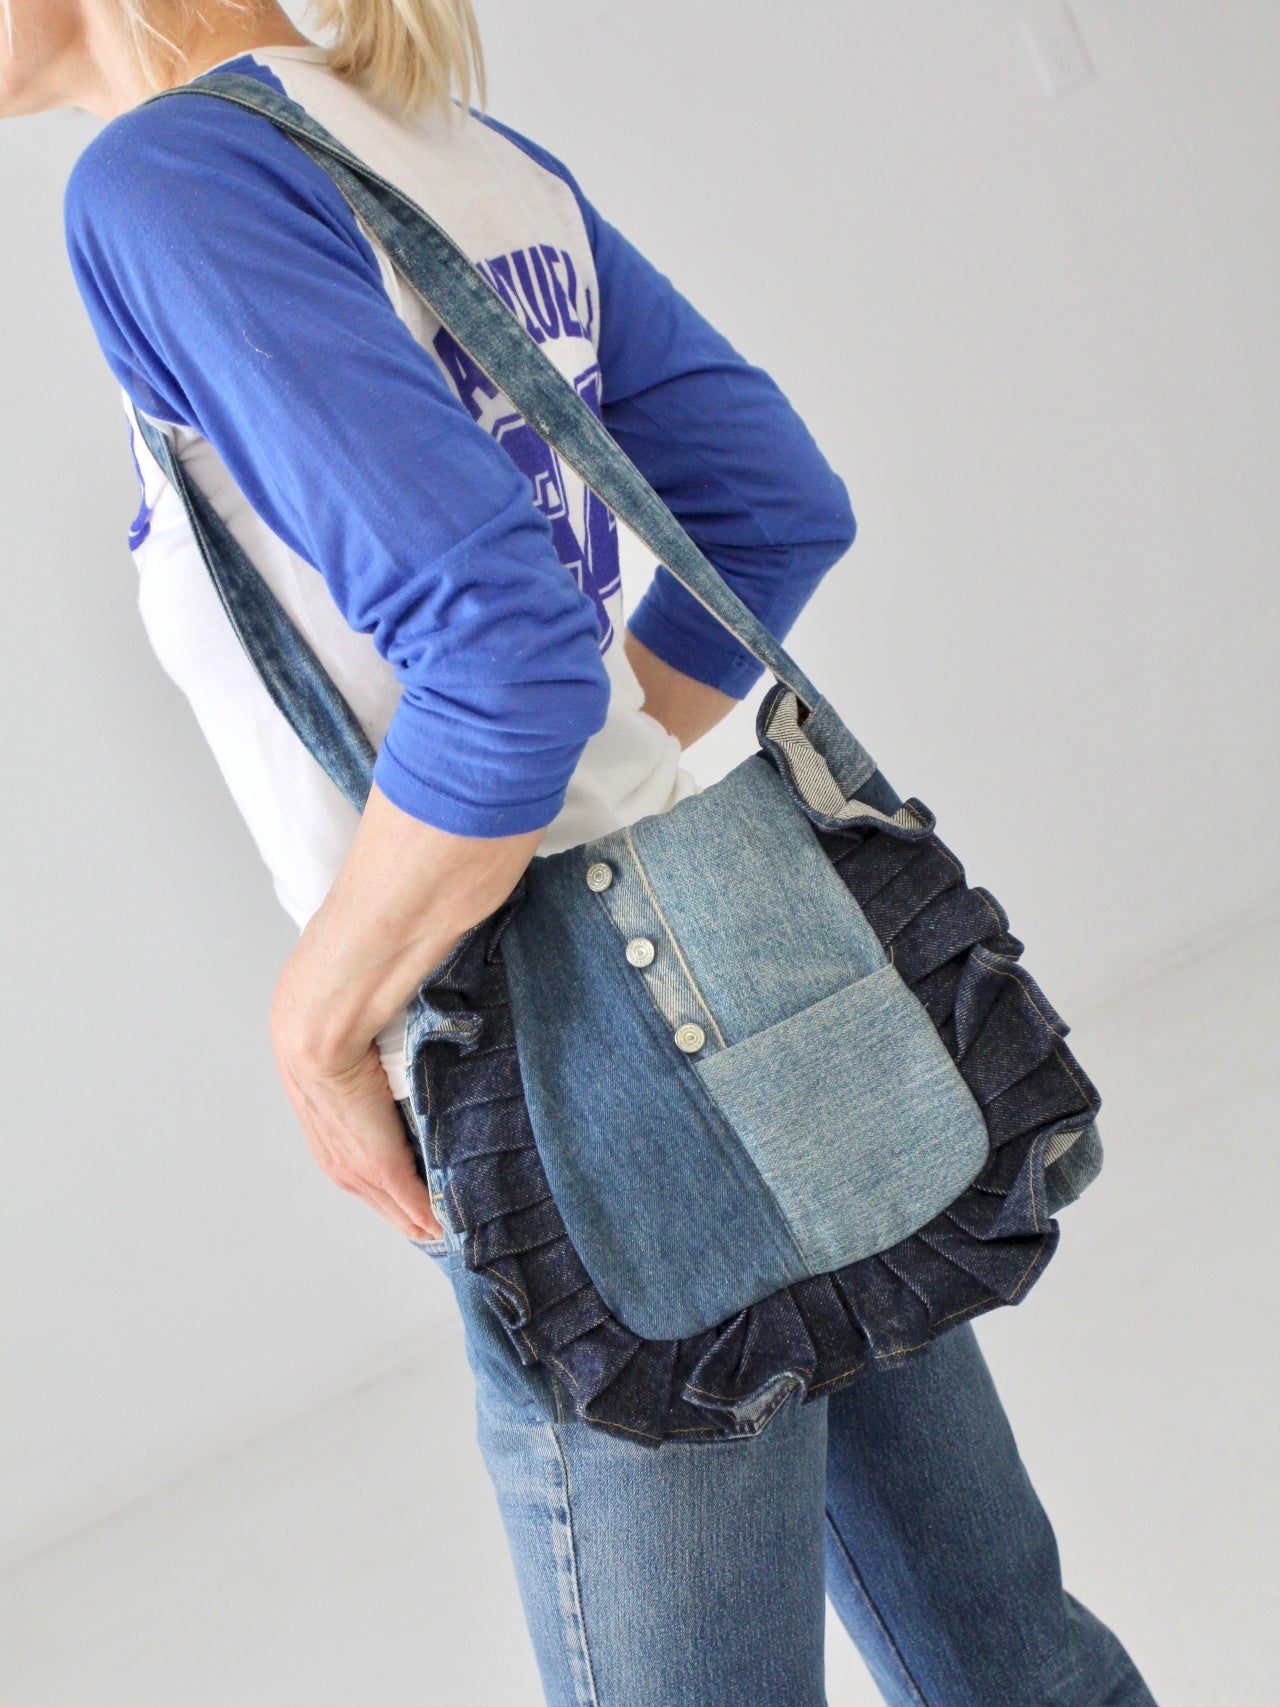 Small denim bag, handmade jeans purse for various essentials . : r/handmade